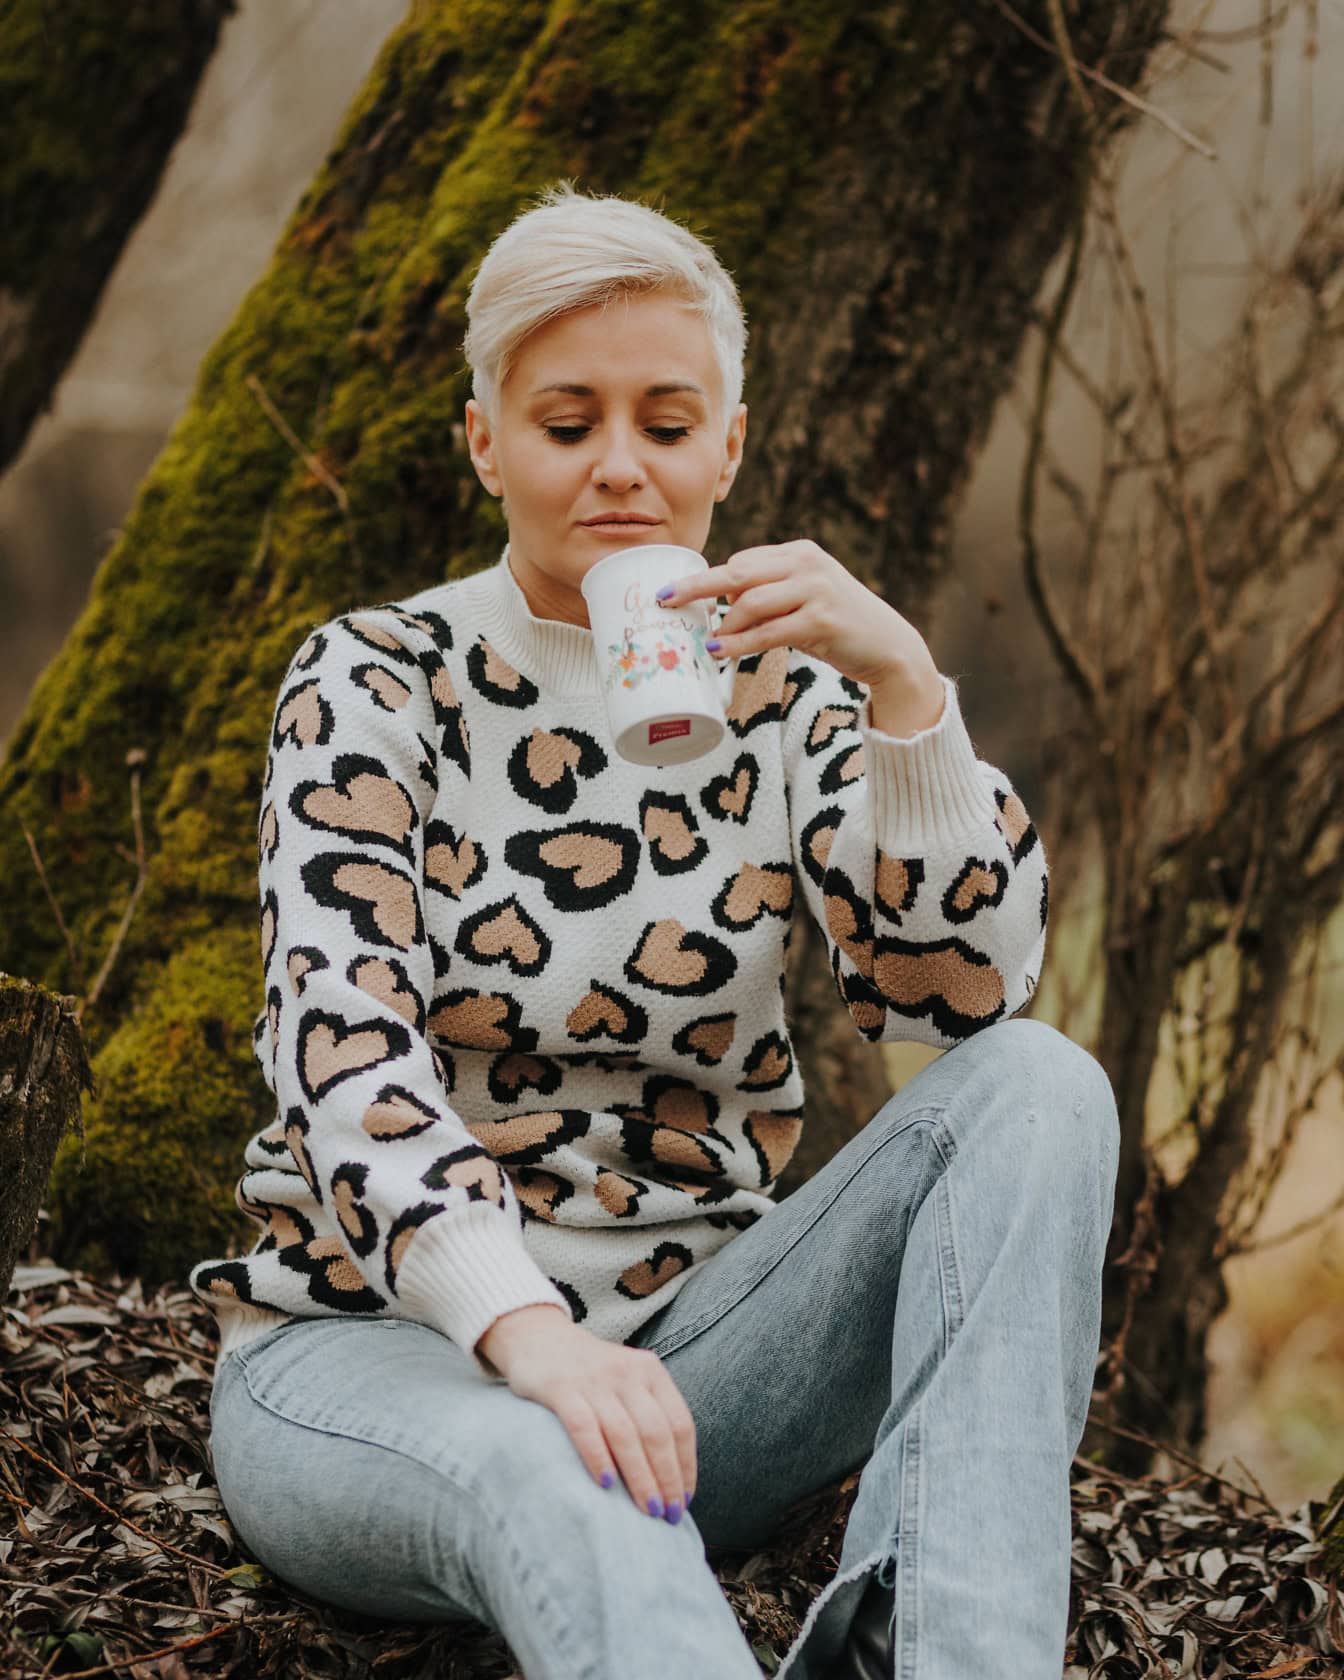 金色短发的女人穿着毛衣和漂白裤子坐在树桩上，用杯子喝水